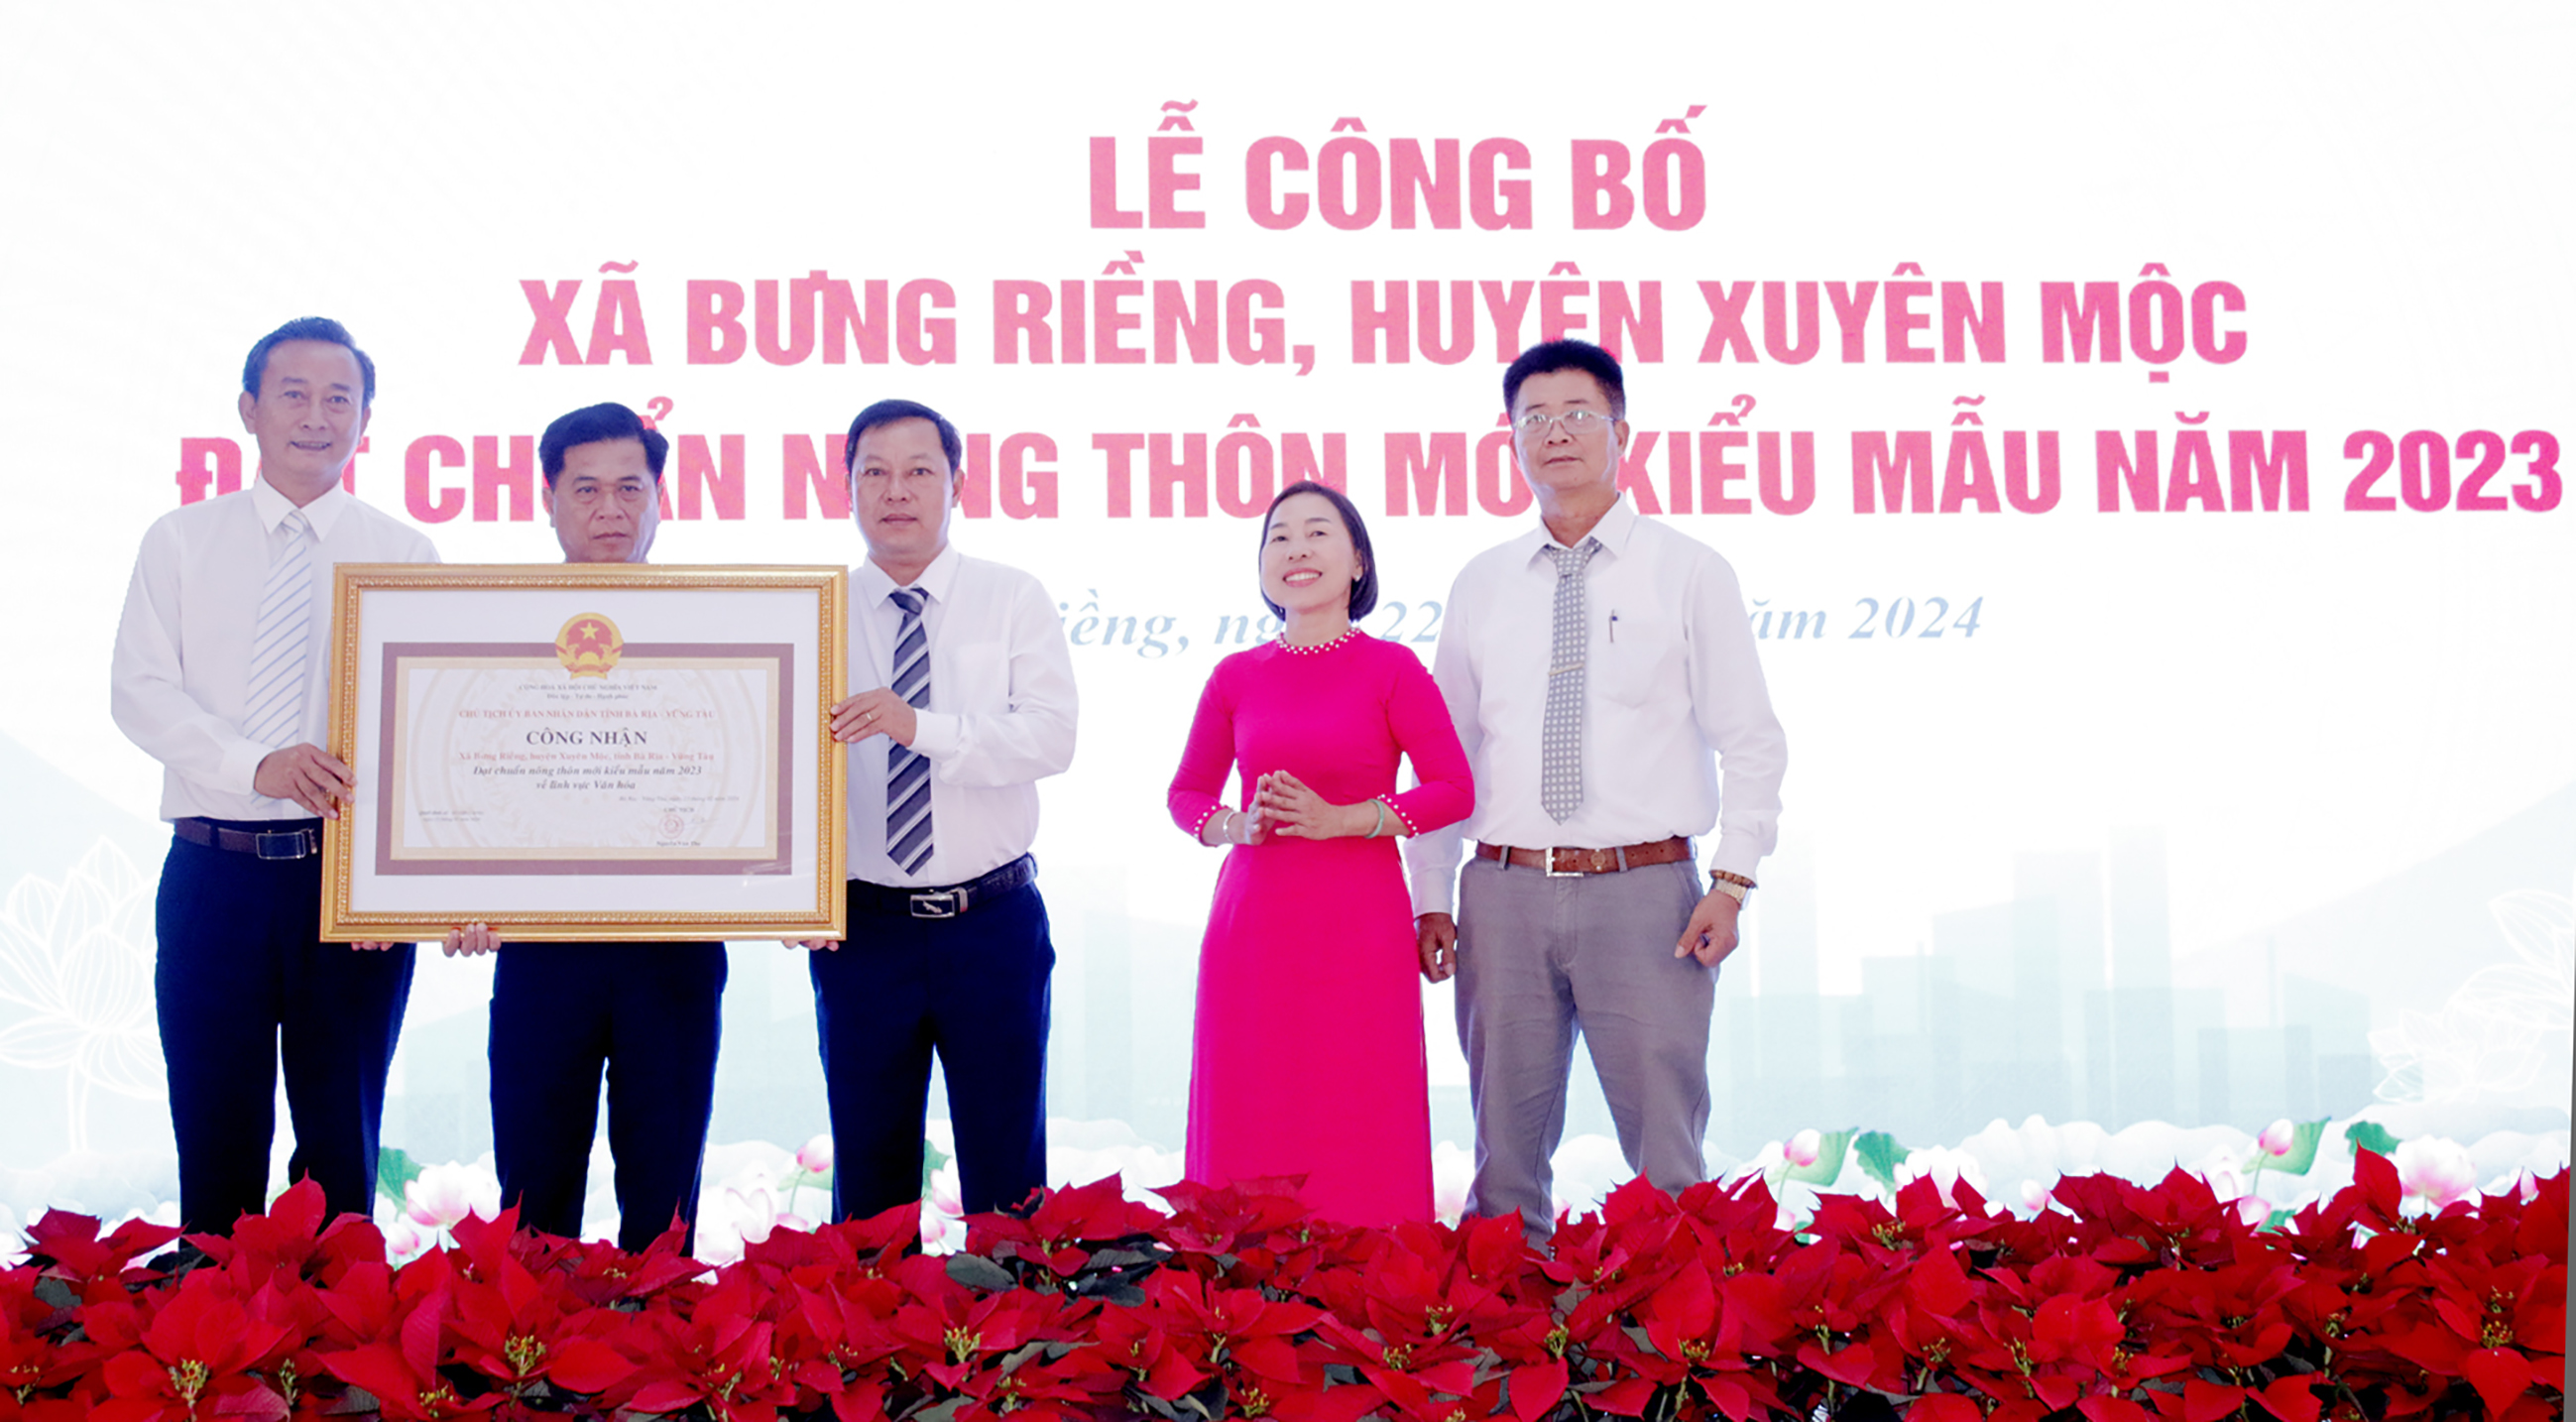 Ông Lê Hồng Ngọc, Phó Chủ tịch UBMTTQ Việt Nam tỉnh trao Bằng công nhận xã Bưng Riềng đạt chuẩn NTM kiểu mẫu về lĩnh vực văn hóa năm 2023.